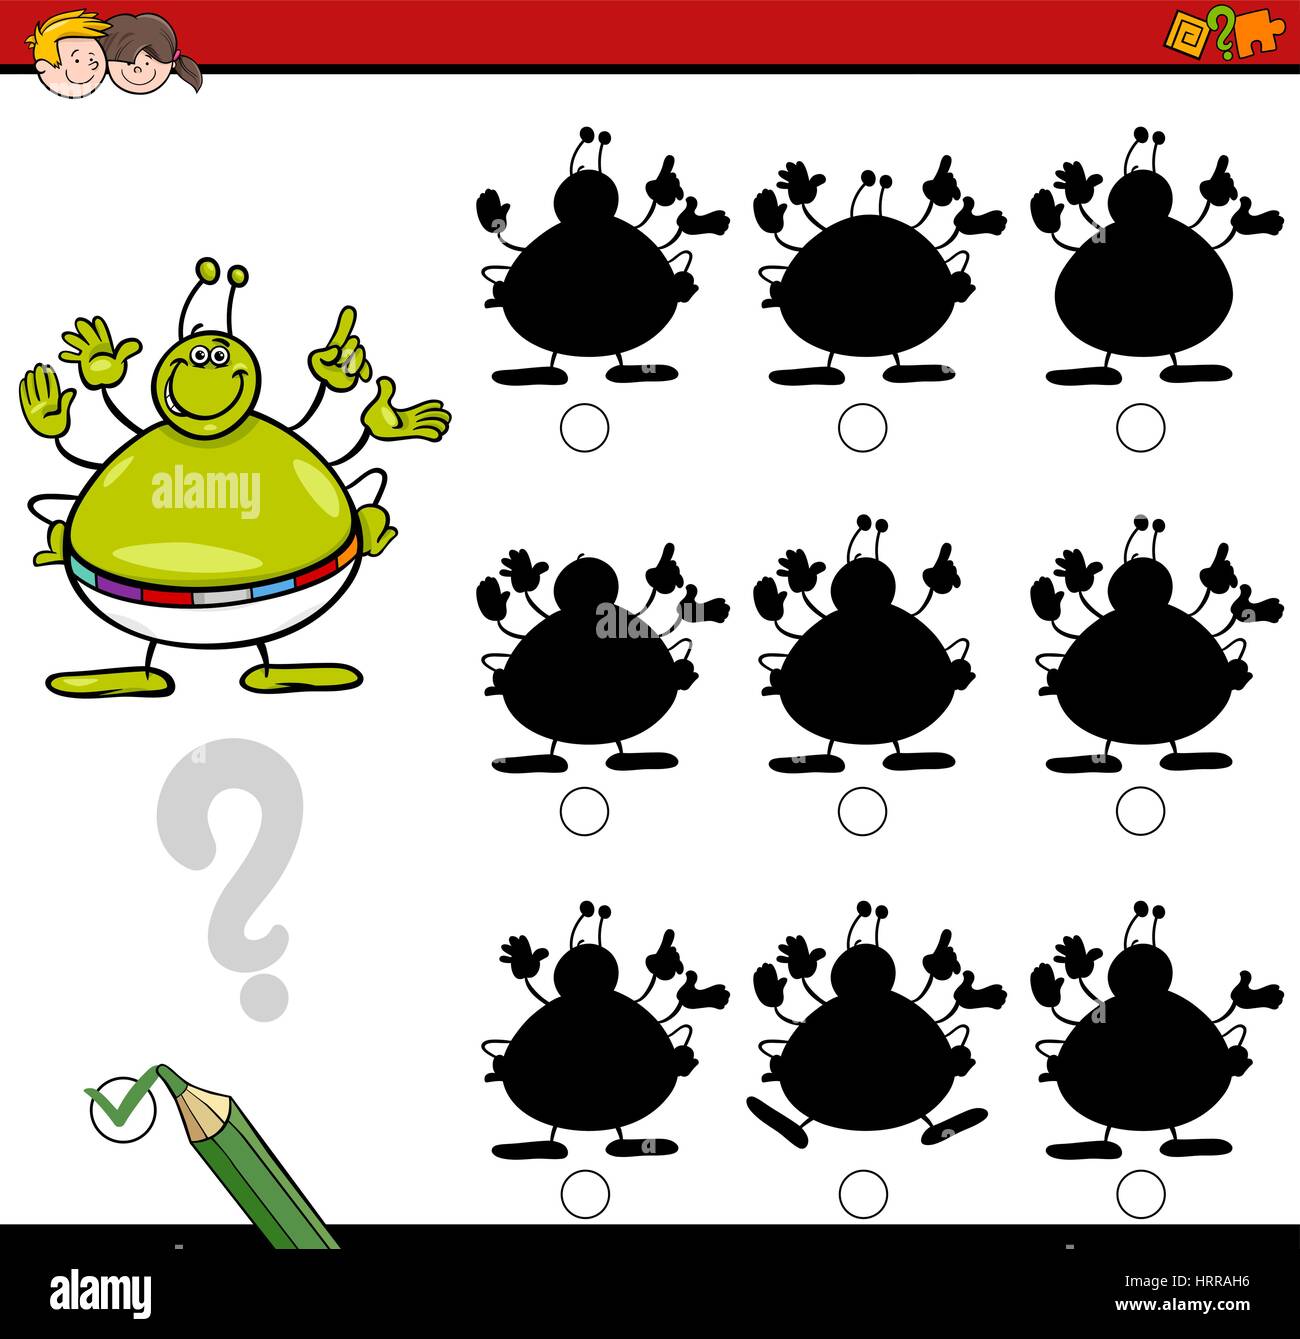 Cartoon illustrazione di trovare l'ombra senza differenze di attività educative per i bambini con Alien personaggio di fantasia Illustrazione Vettoriale